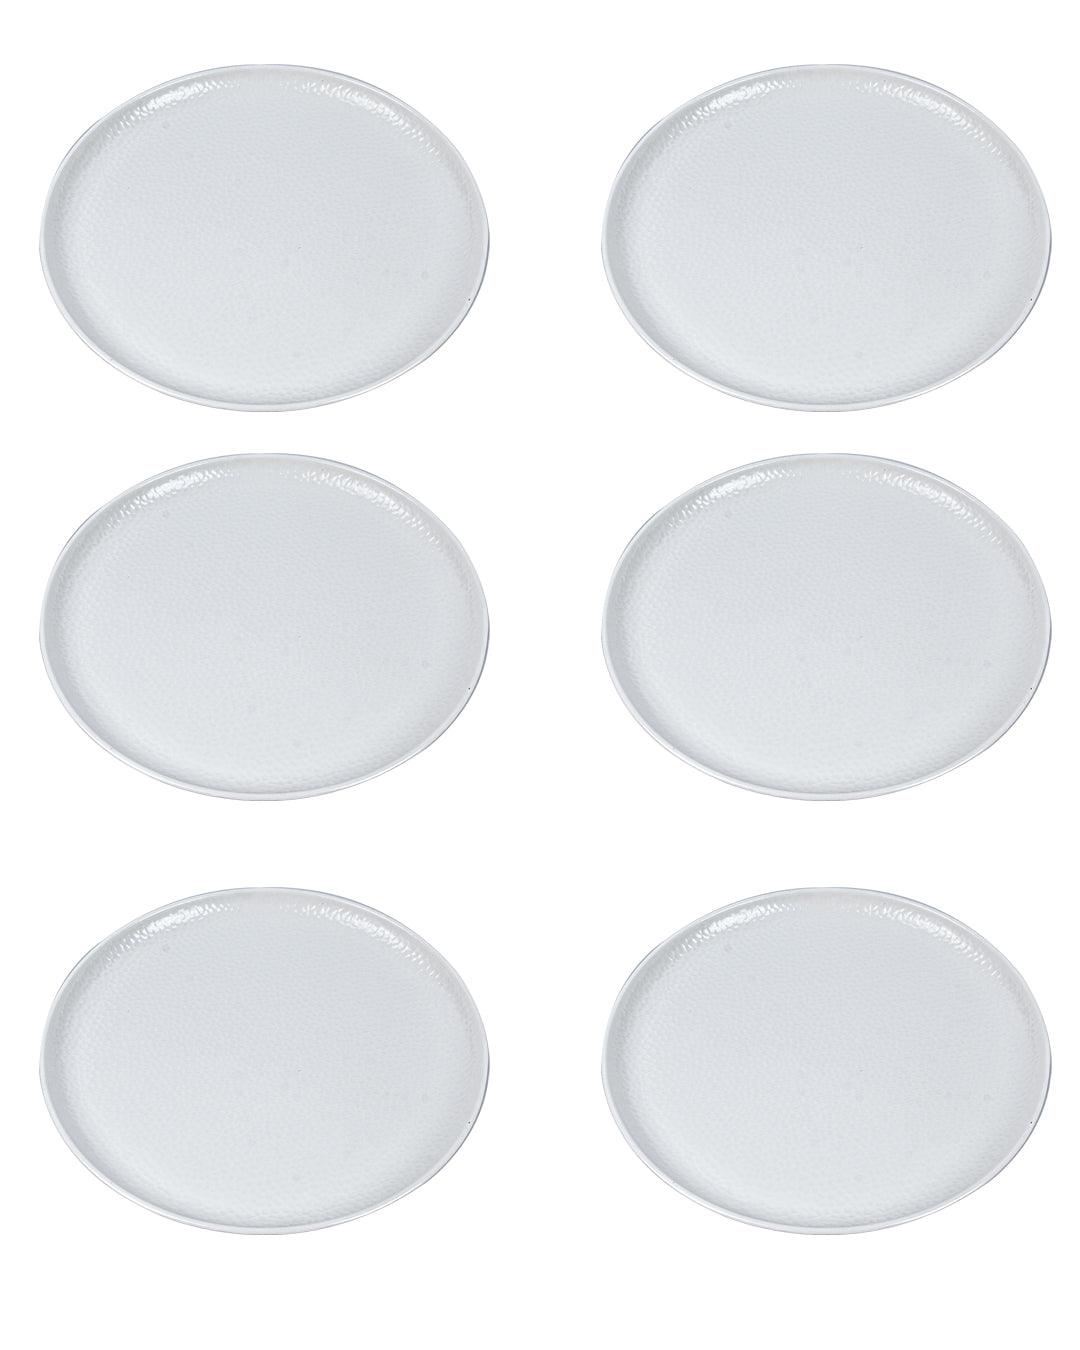 Market 99 Hammered Melamine Tableware White Glossy Finish Full Plates for Dining Table (Set Of 6, White) - MARKET 99